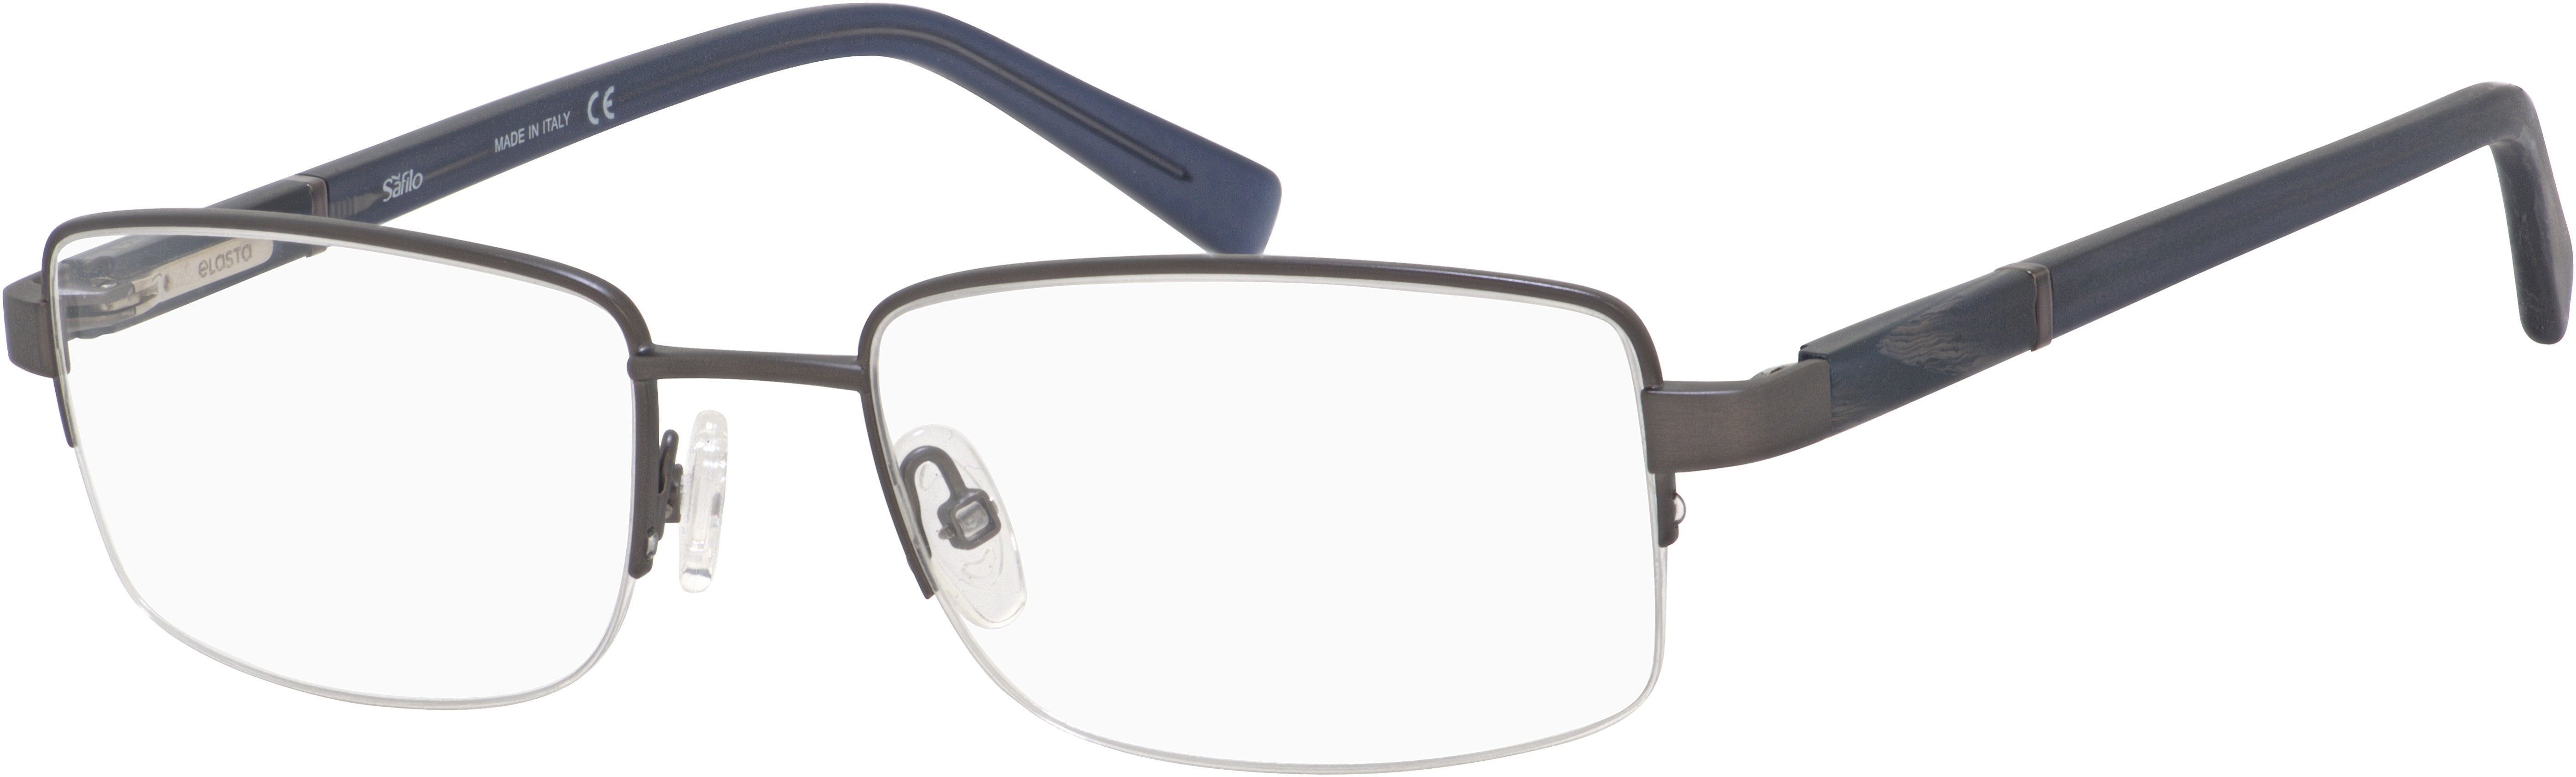  Elasta 7223 Rectangular Eyeglasses 0HWJ-0HWJ  Dark Gray (00 Demo Lens)